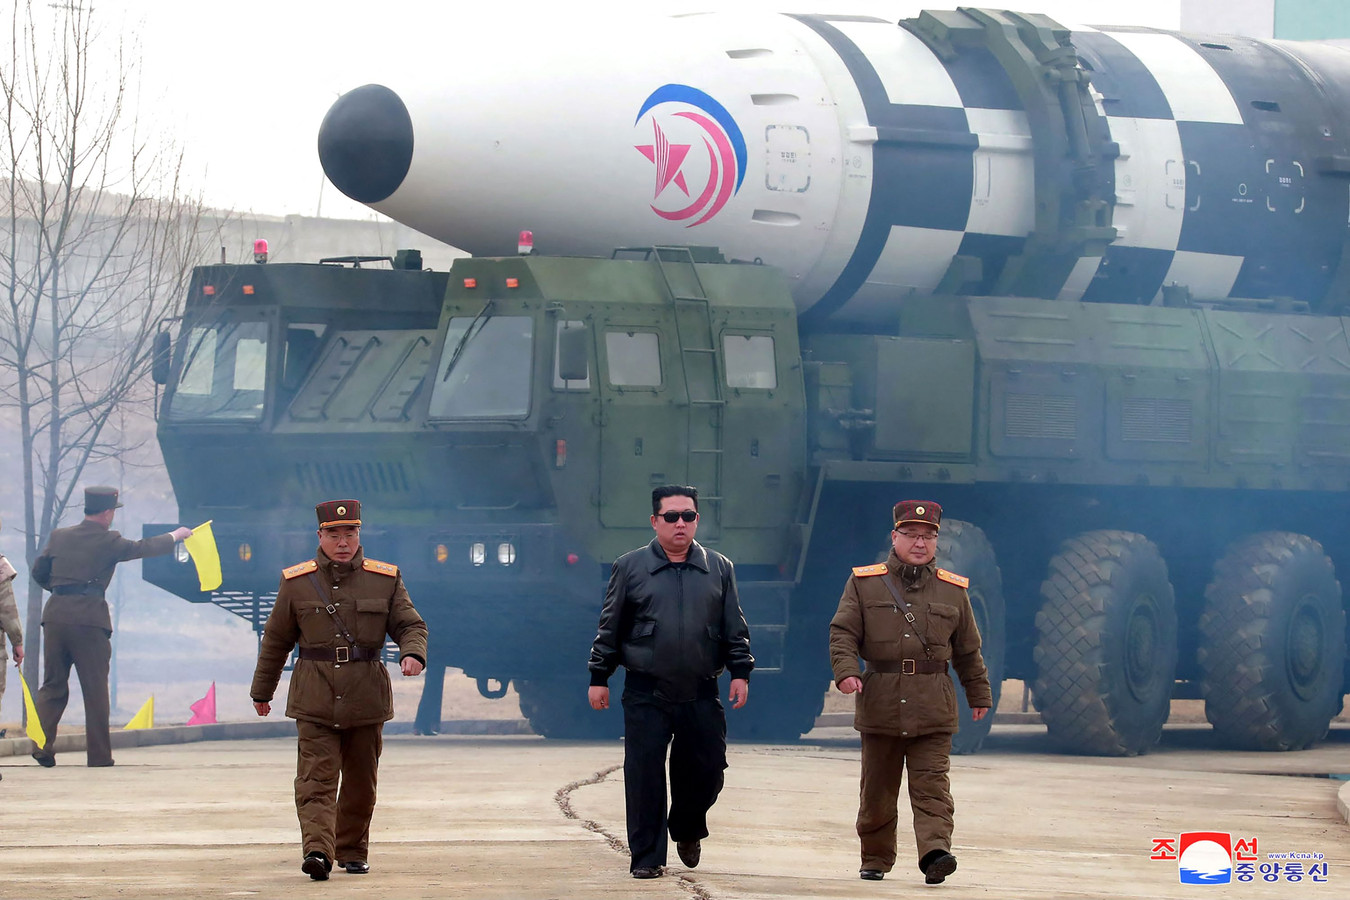 Op deze foto, verspreid door het Koreaanse persagentschap KCNA op 24 maart, is de Noord-Koreaanse leider Kim Jong-Un te zien bij de voorstelling van de nieuwe intercontinentale raket Hwasong-17.